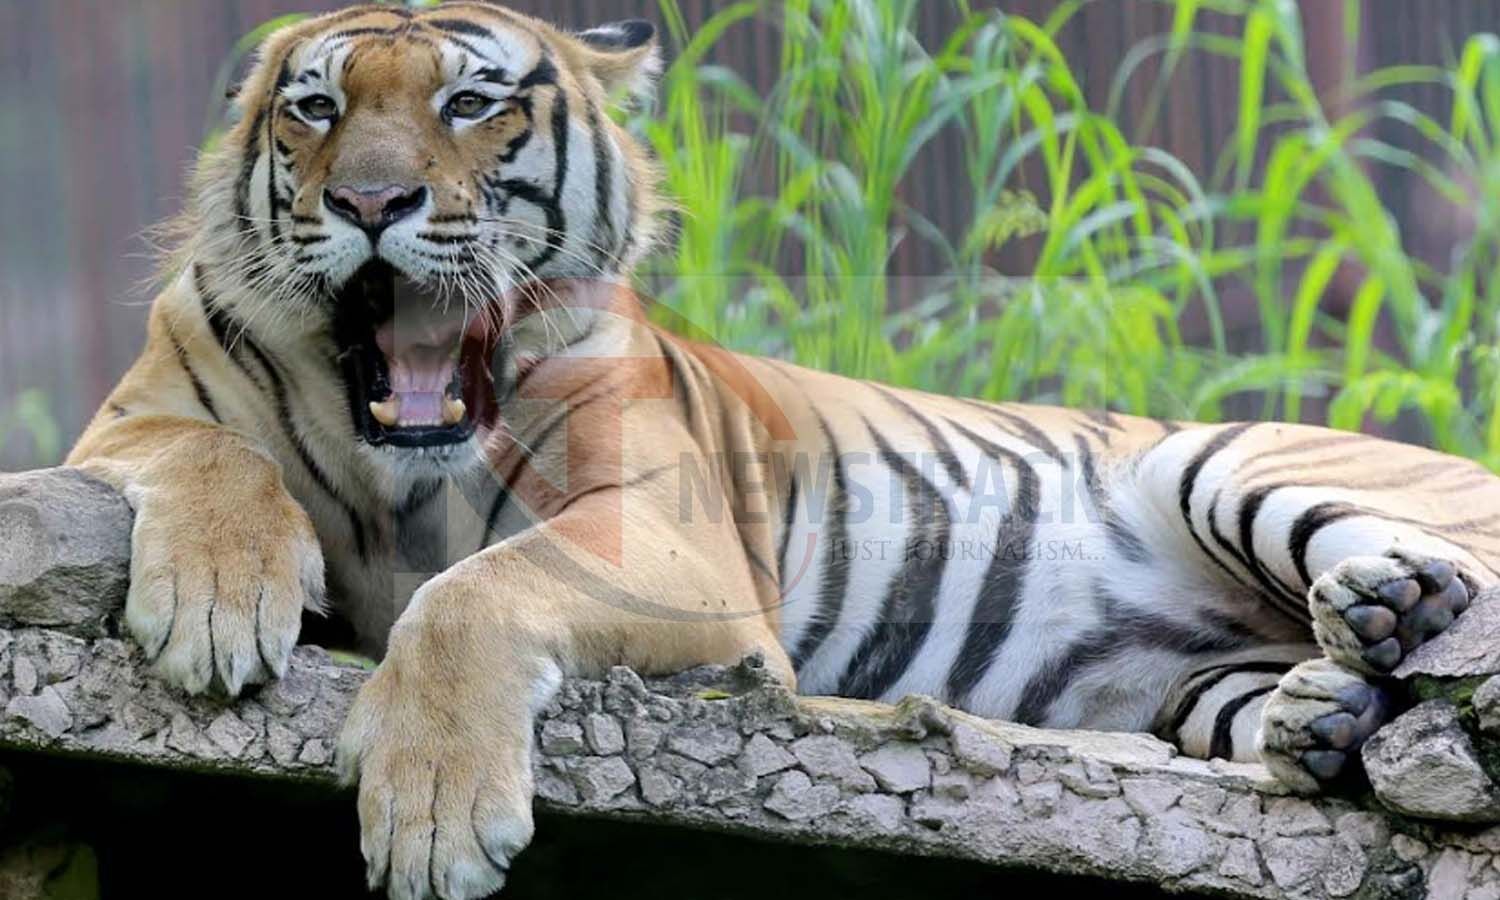 Tigers Death Investigation: दुधवा नेशनल पार्क में बाघों की मौत का मामला, आज जांच करने पहुंचेगी 4 सदस्यीय कमेटी